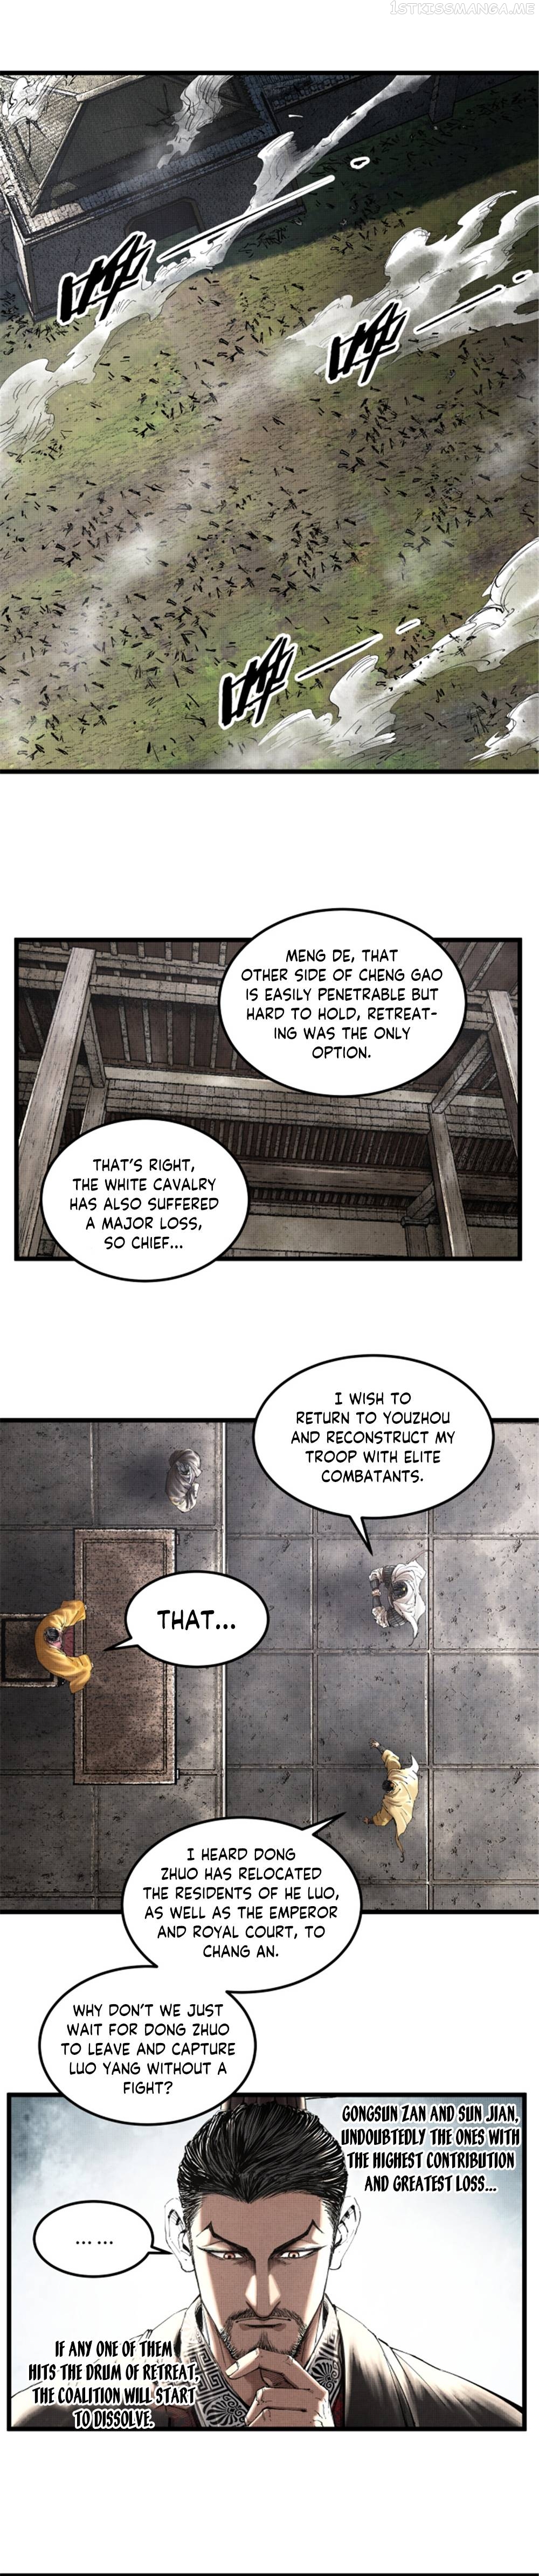 Lu Bu’S Life Story - Page 3